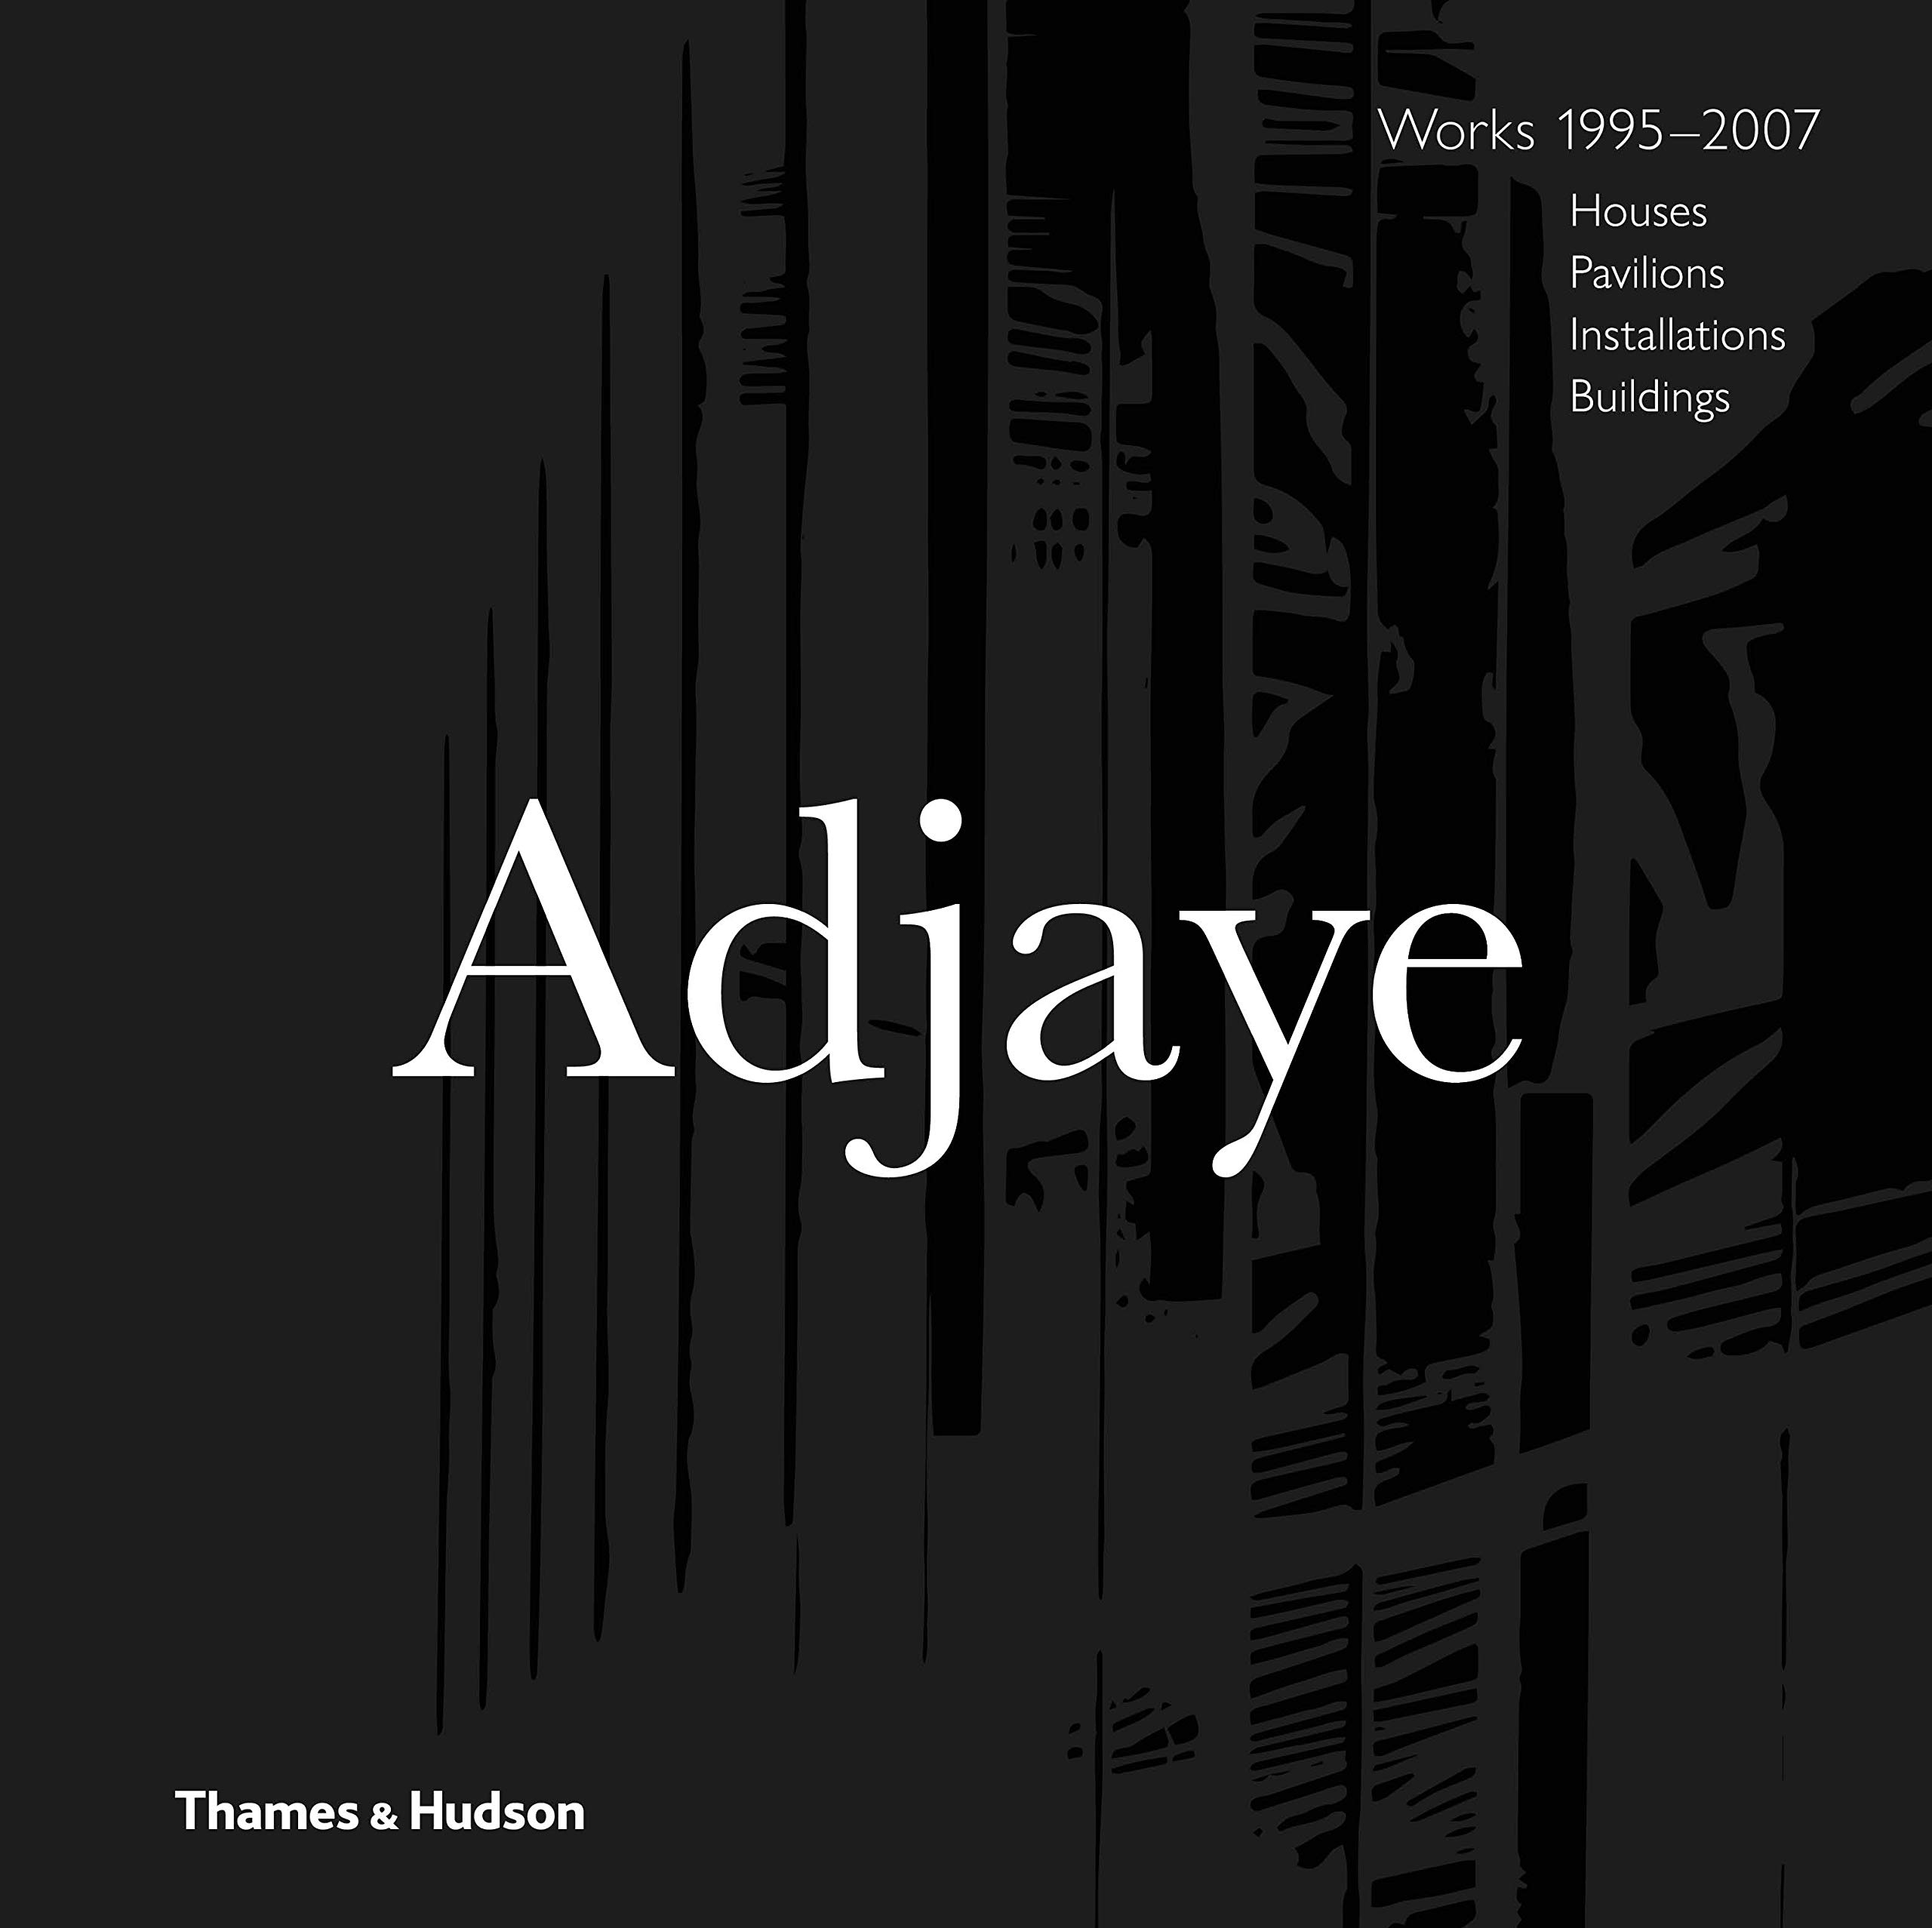 David Adjaye - Works